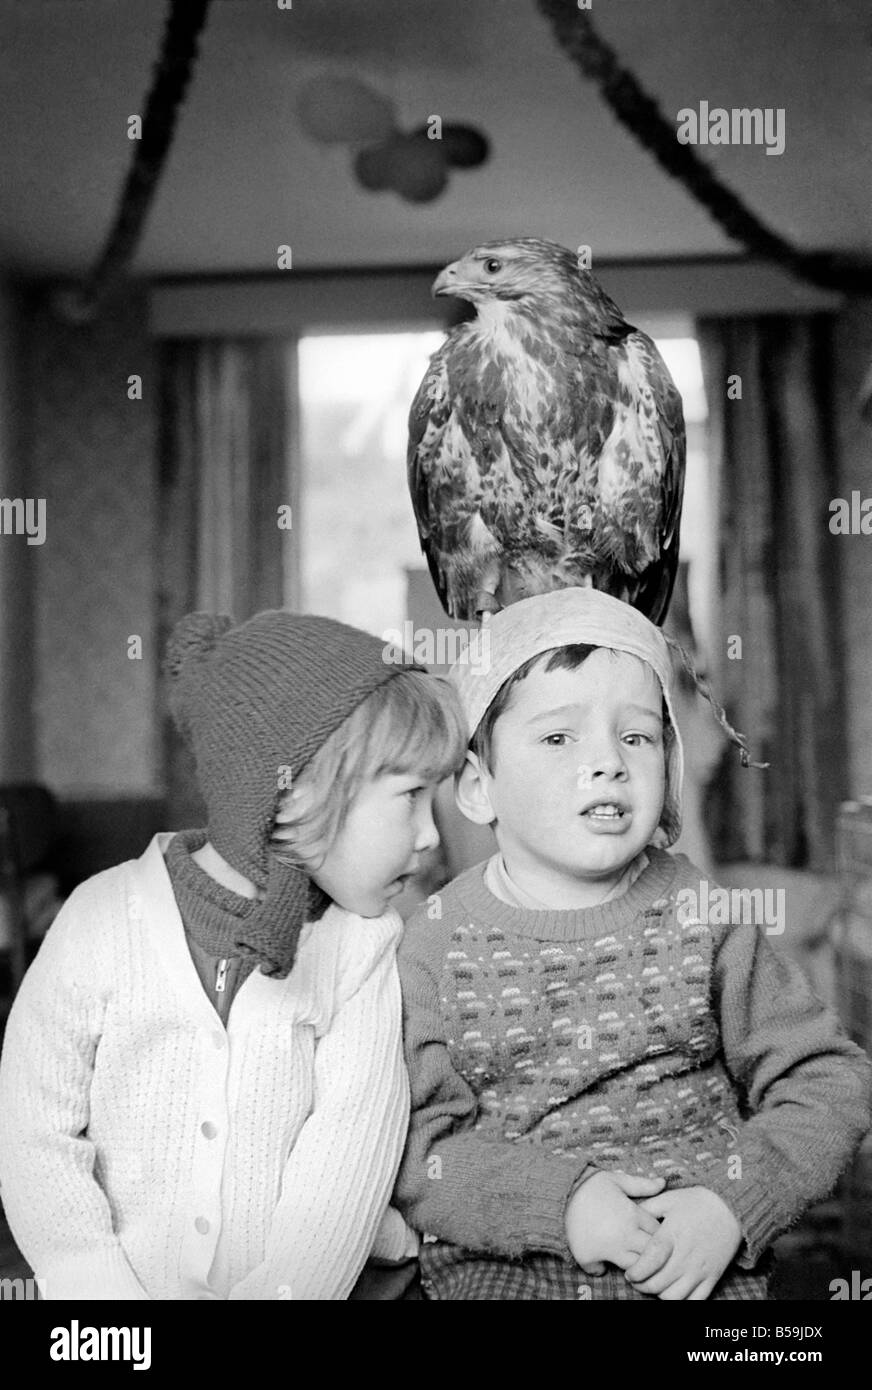 Animal/pet/inhabituelle. Les enfants avec Buzzard. Décembre 1970 71-00012-004 Banque D'Images